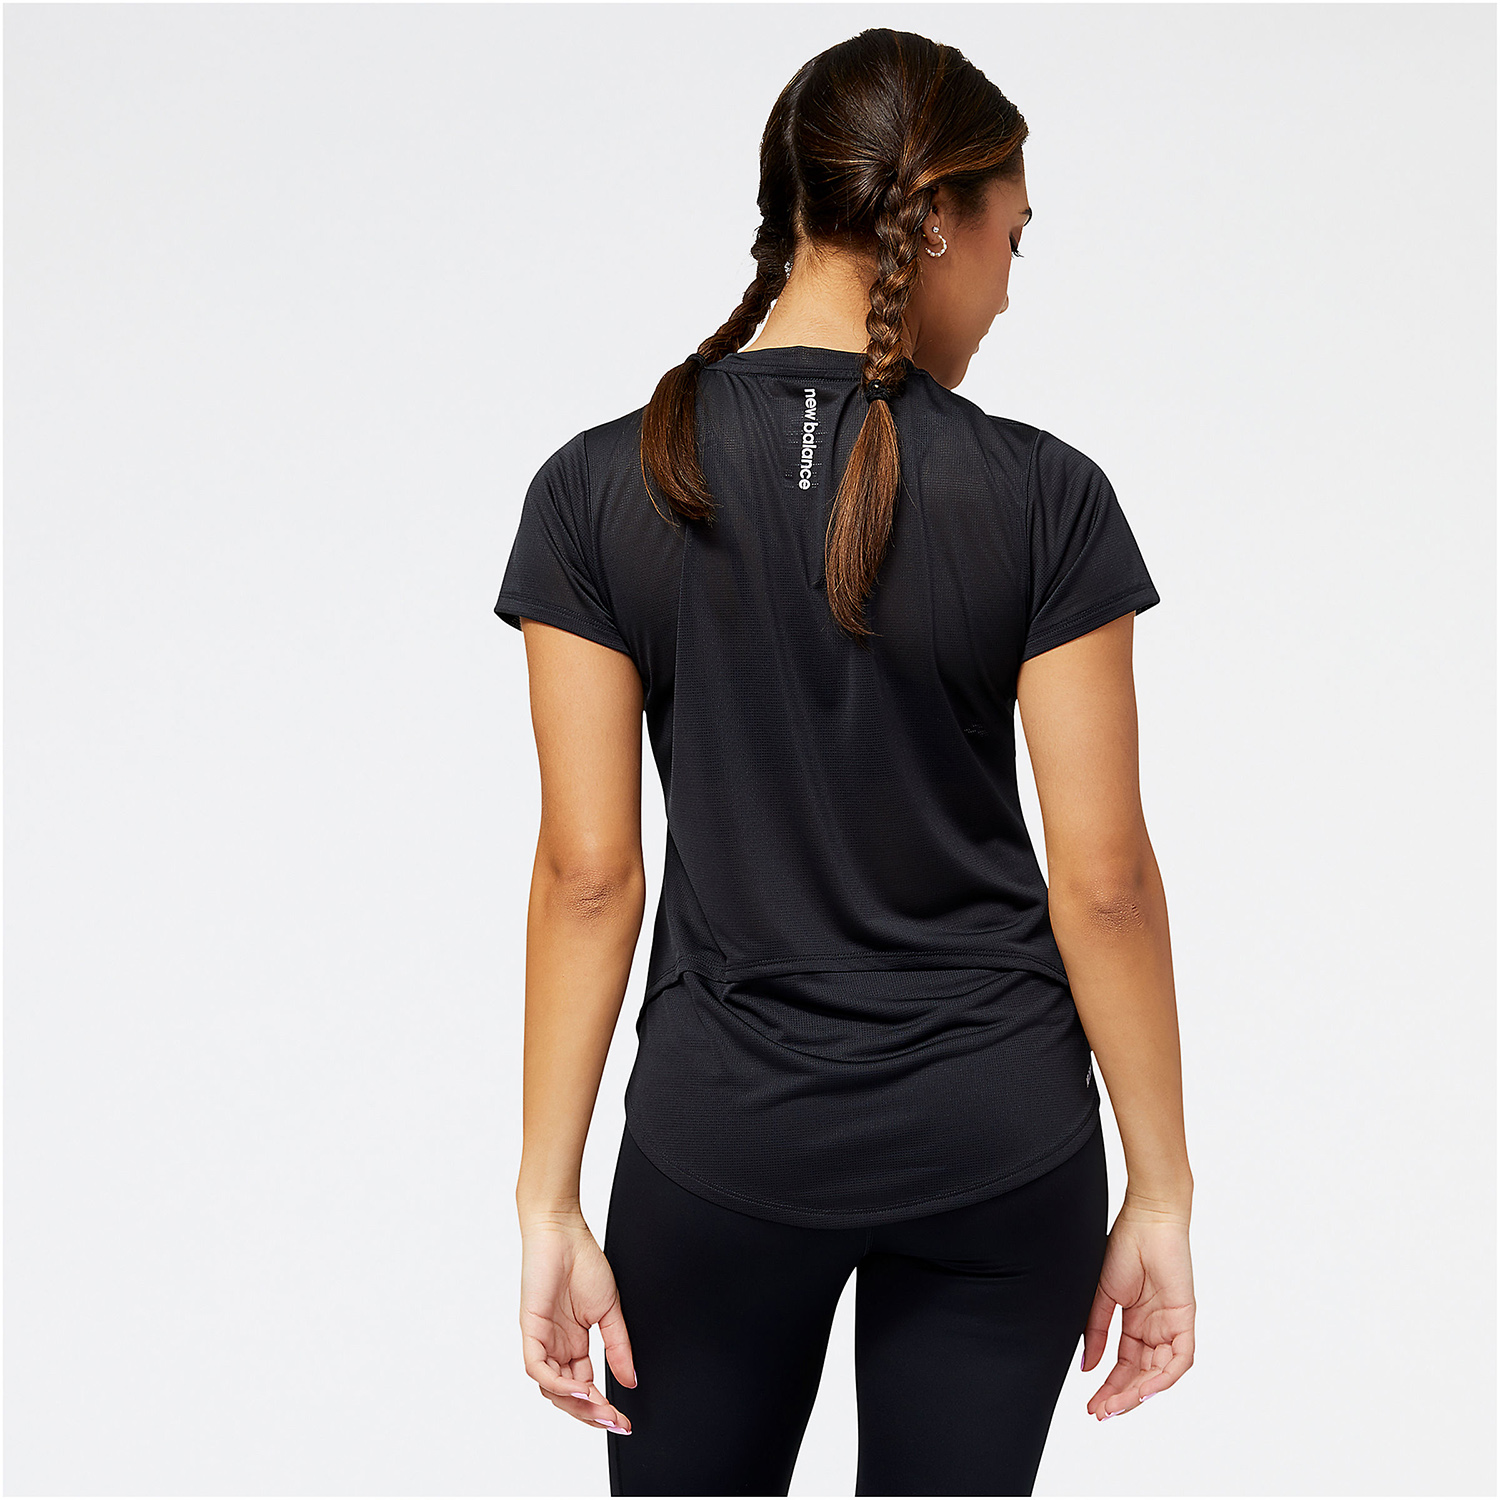 New Balance Accelerate Women's Running T-Shirt - Black